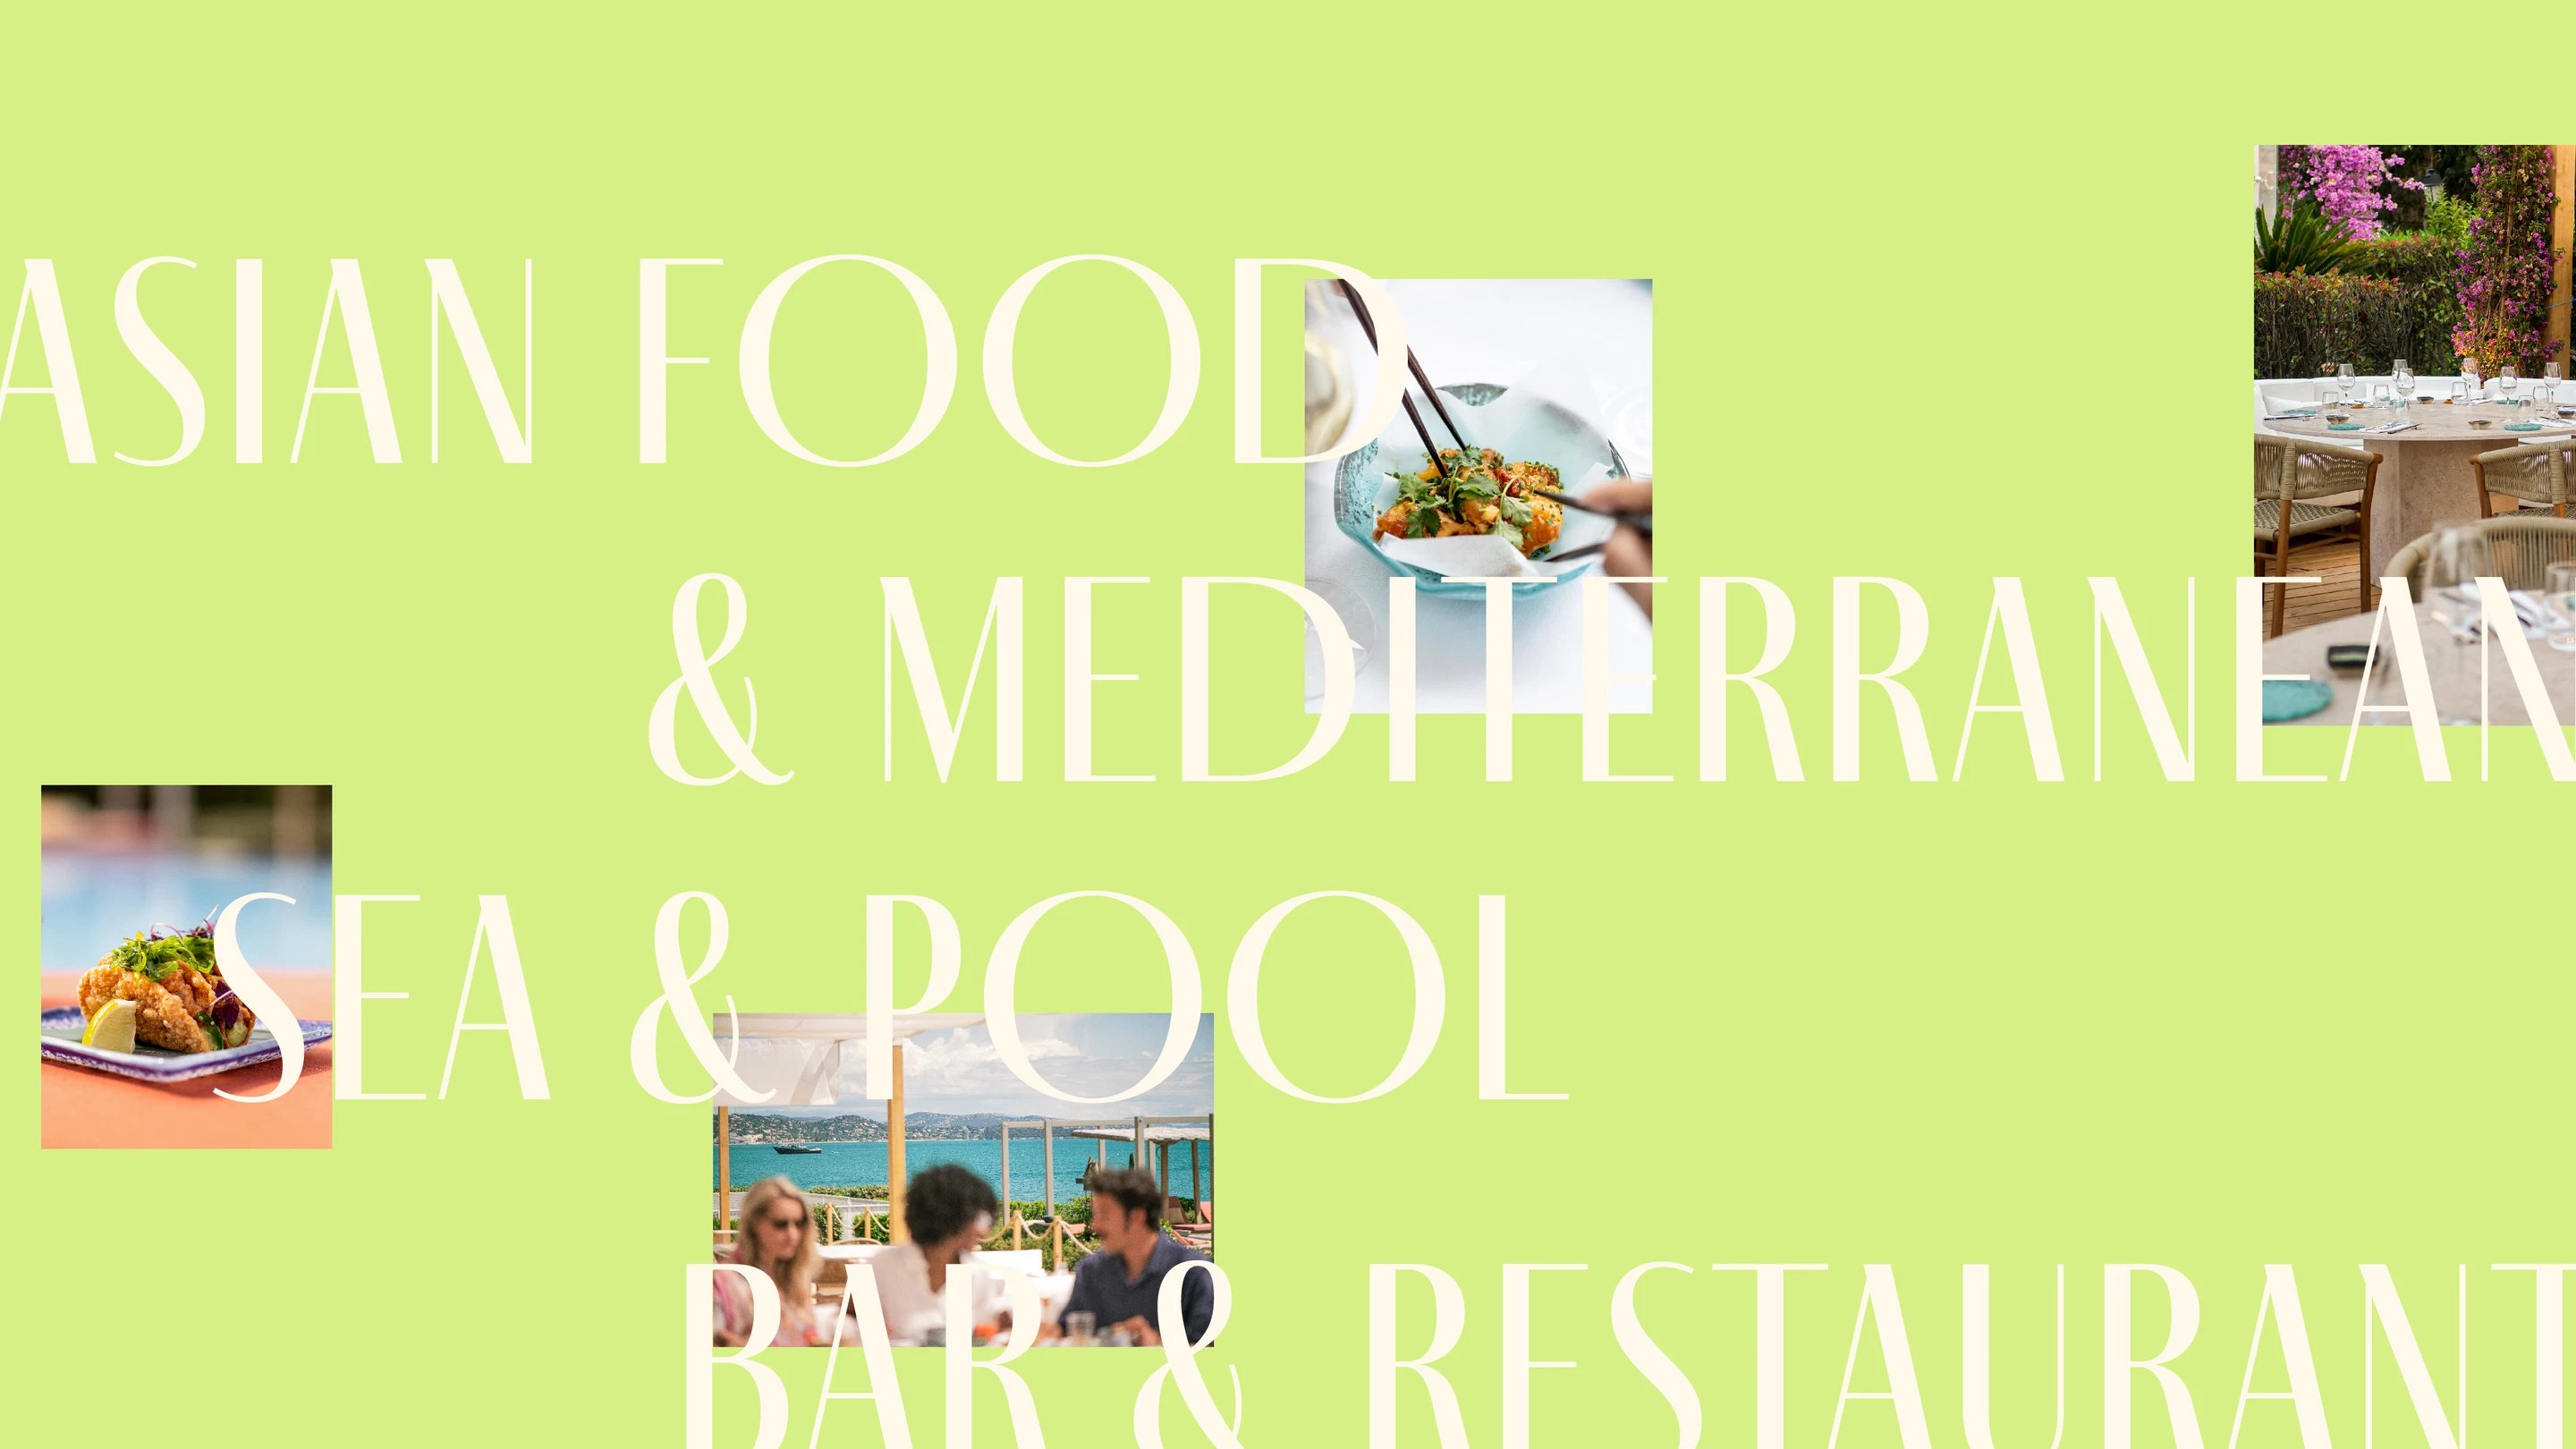 18/2024/Photos/Help/Kube-st-tropez-restaurant-header.jpg